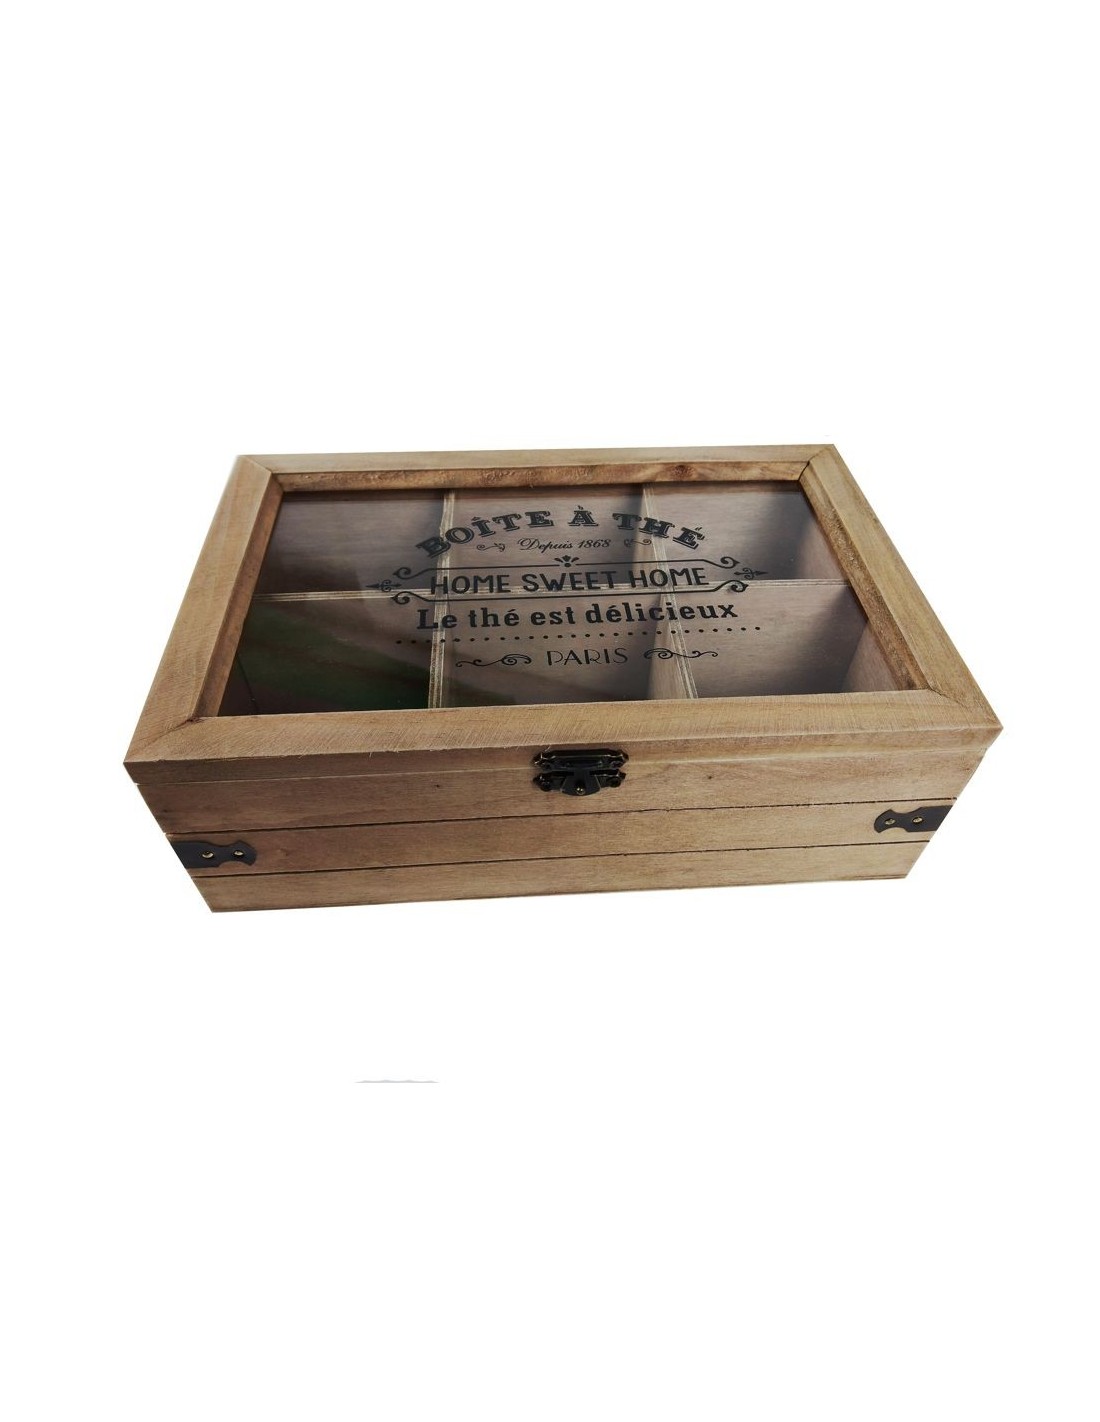 Caja madera almacenaje té infusiones 6 compartimientos estilo vintage